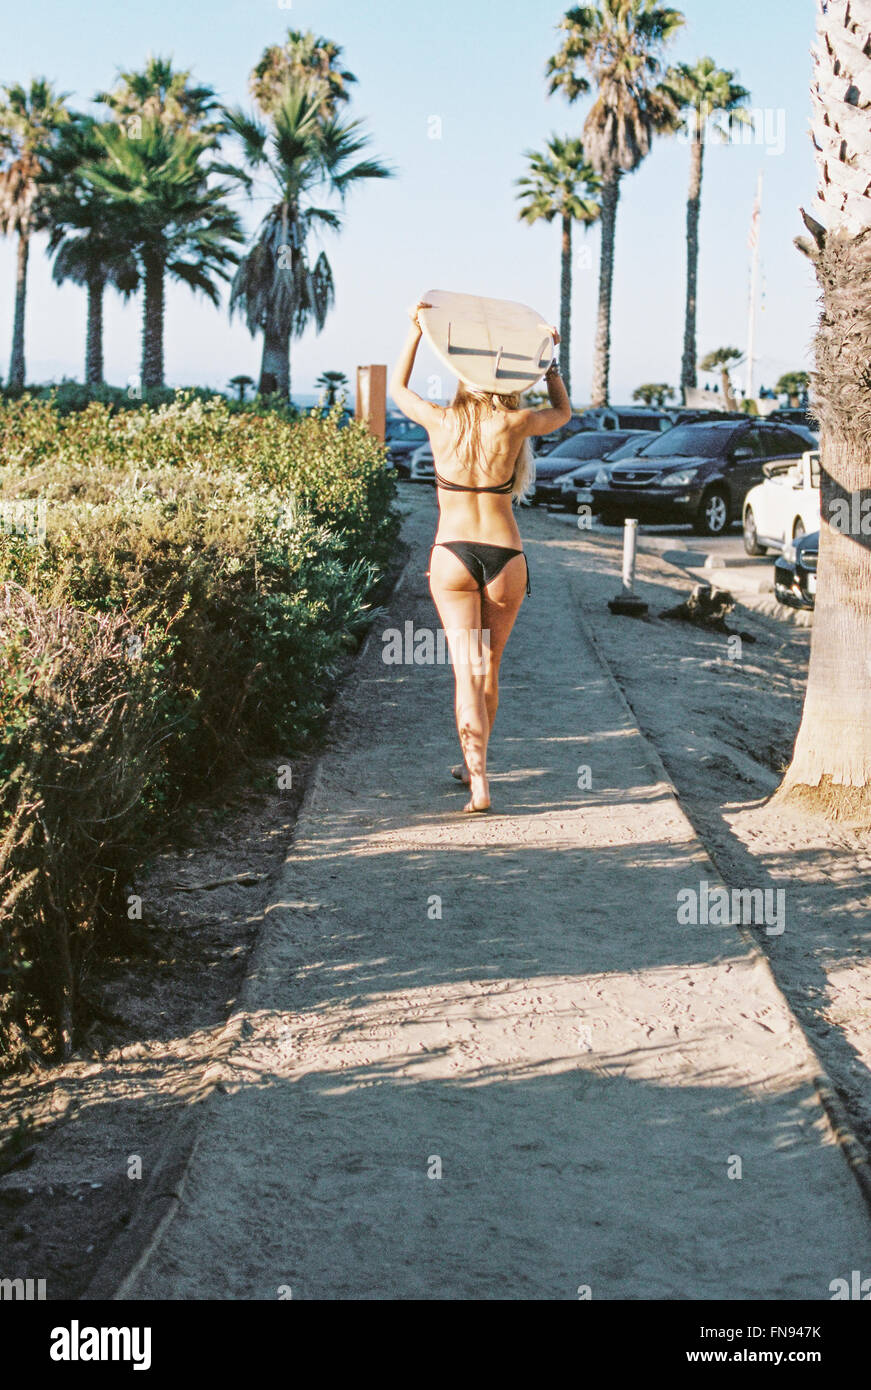 Una donna in bikini nero a piedi giù per un sentiero che porta una tavola da surf sulla sua testa. Foto Stock